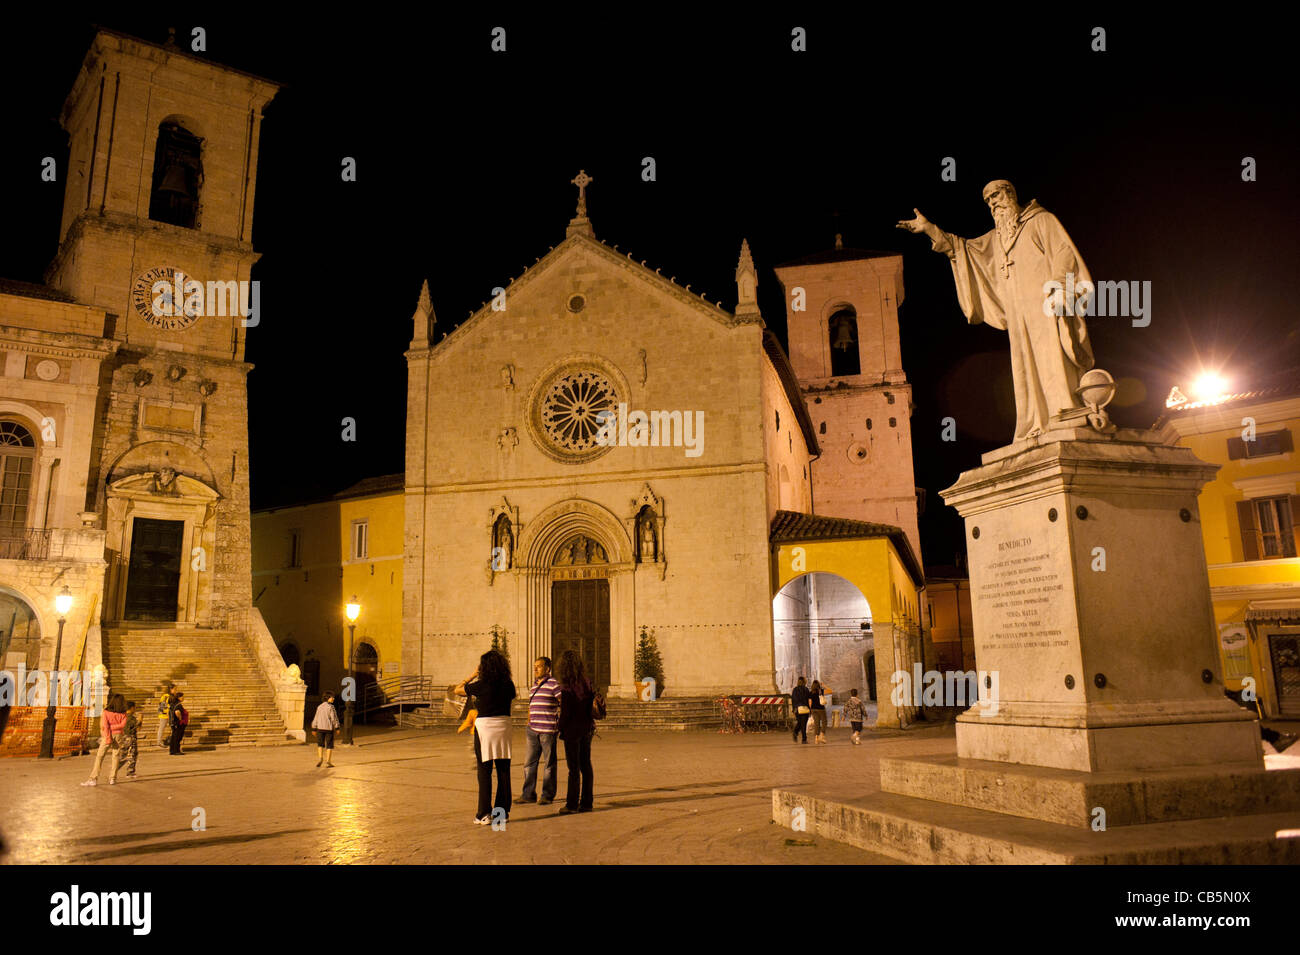 Piazza San Benedetto Norcia Ombrie Italie pendant la nuit Banque D'Images